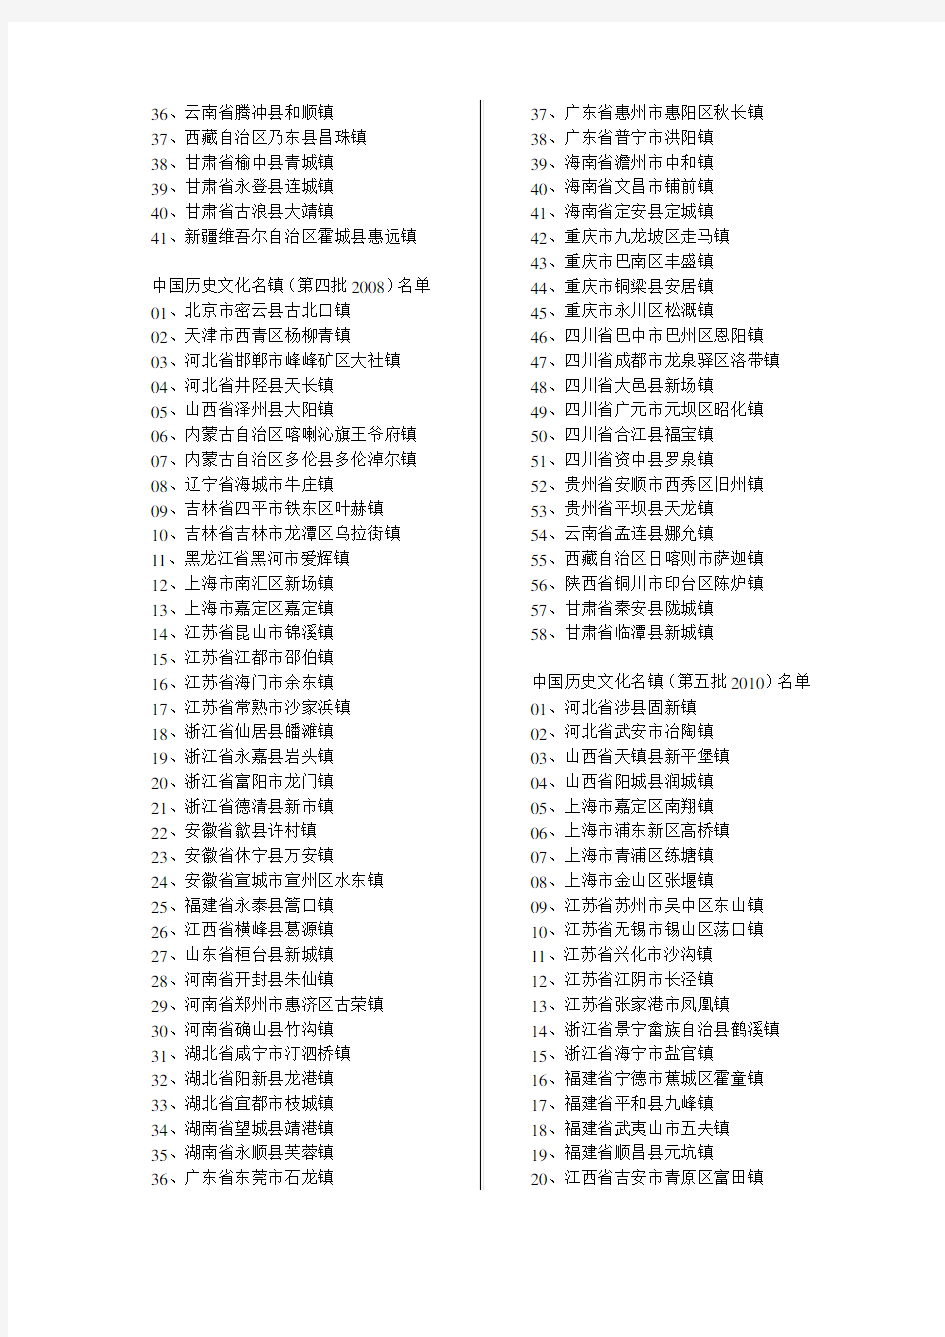 中国历史文化名镇名录(至2014)